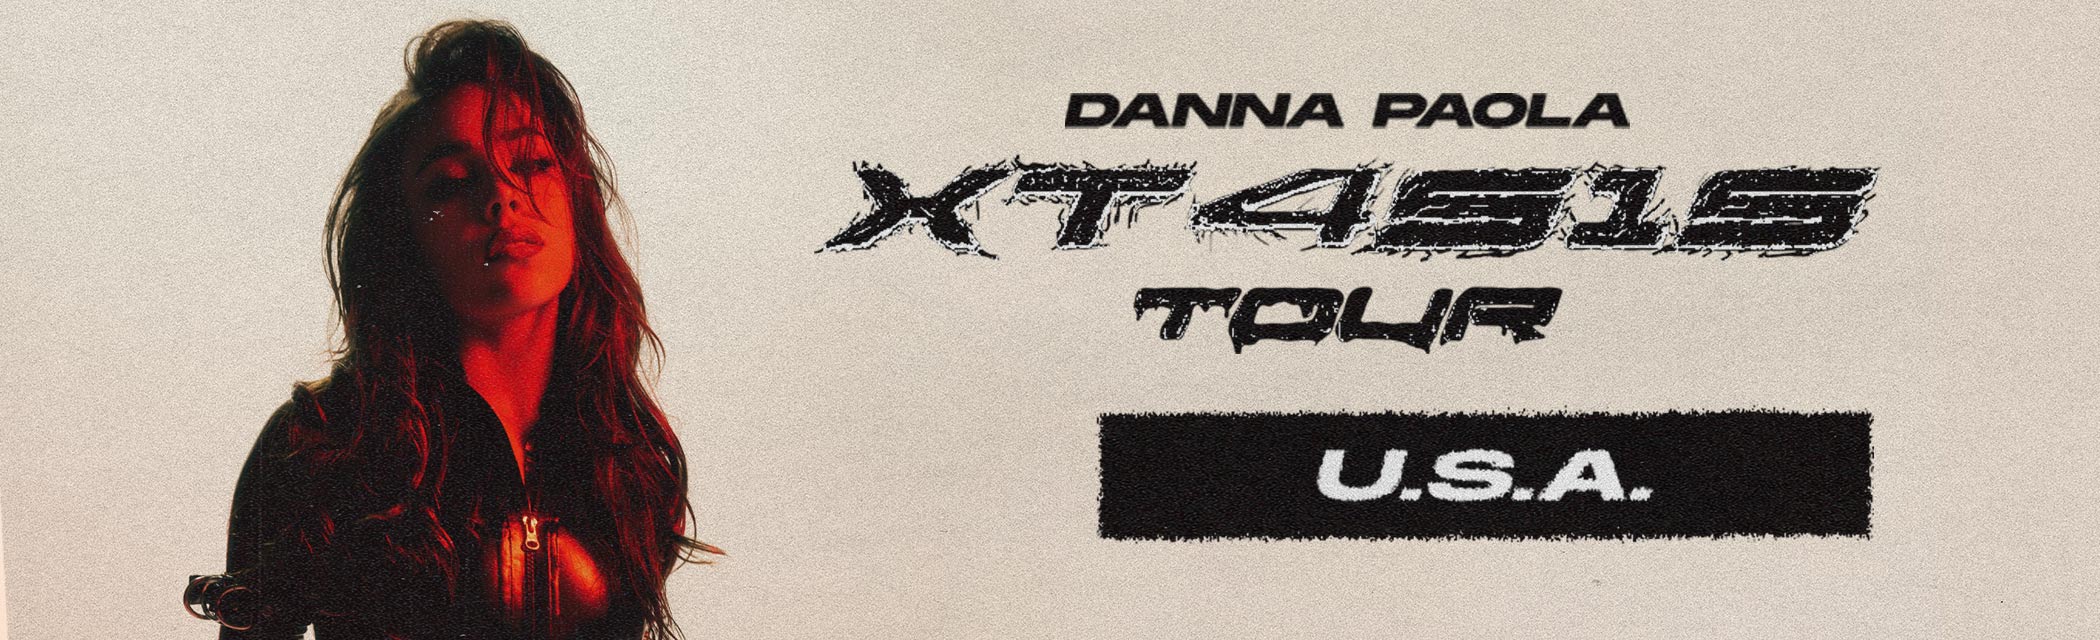 XT4S1S Tour